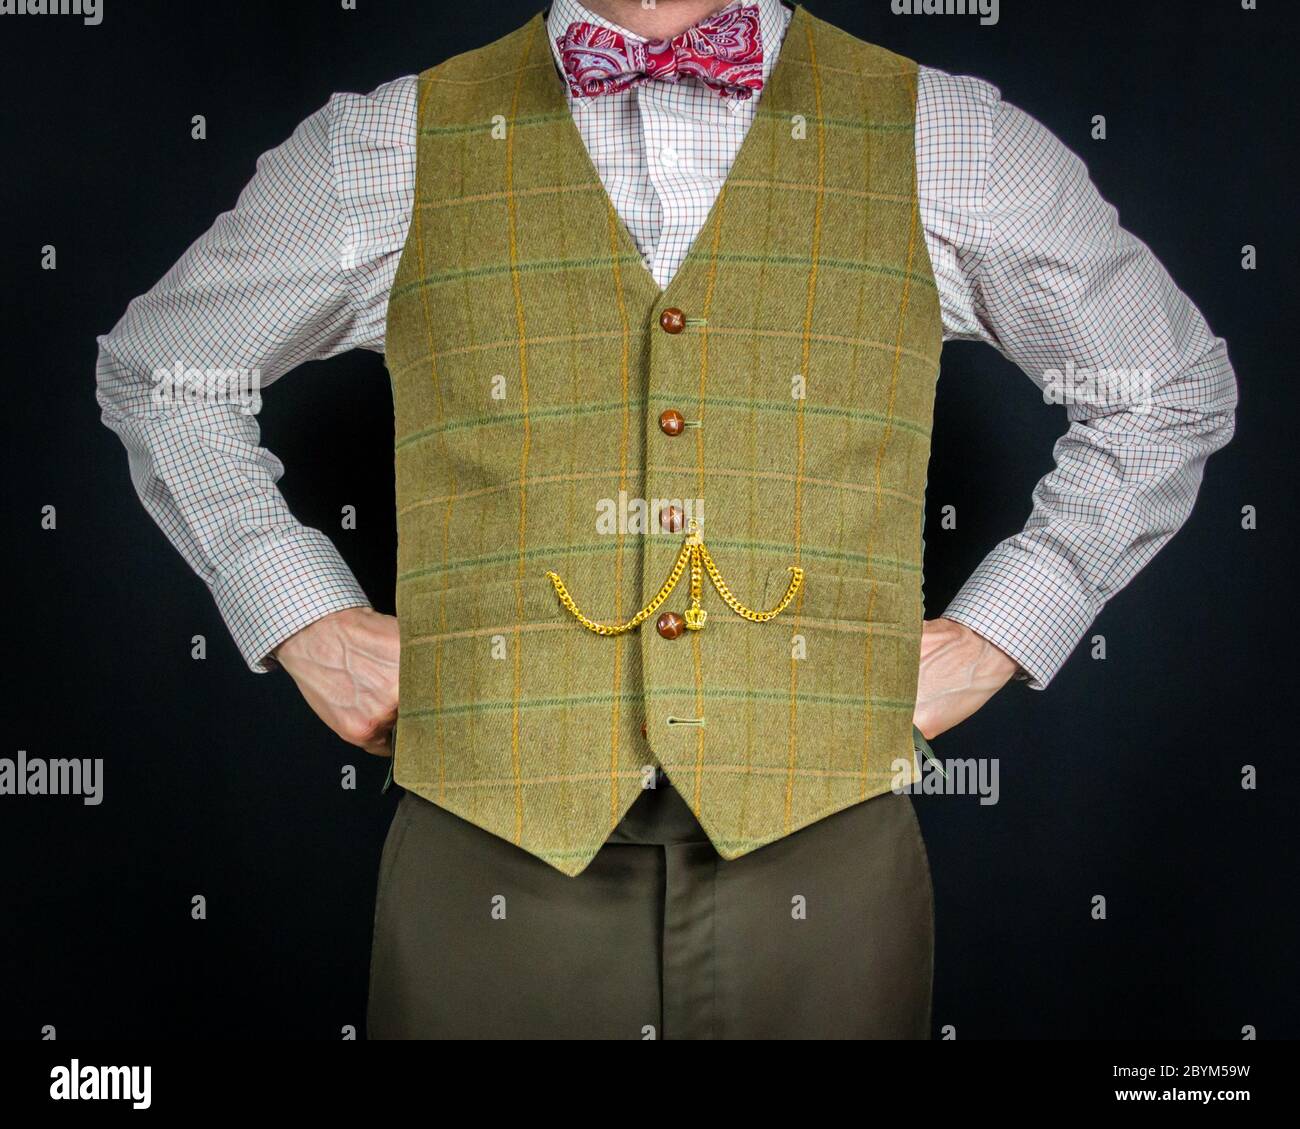 Portrait de l'homme en tweed et noeud papillon. Concept de gentleman britannique classique et excentrique. Mode rétro. Banque D'Images